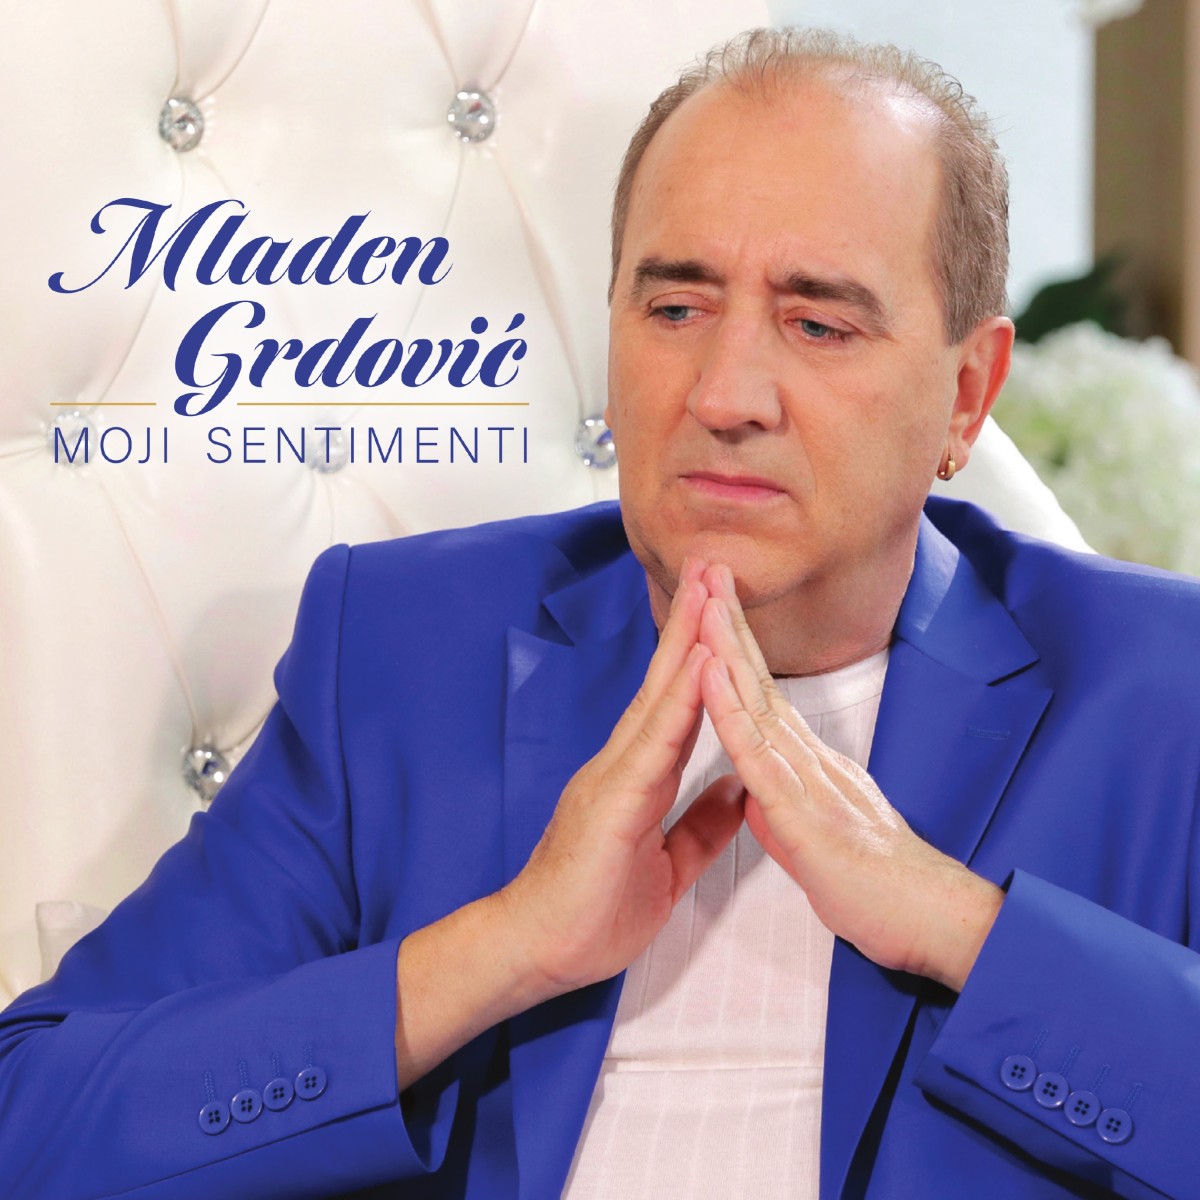 19 najboljih balada Mladena Grdovića na kompilaciji “Moji sentimenti”